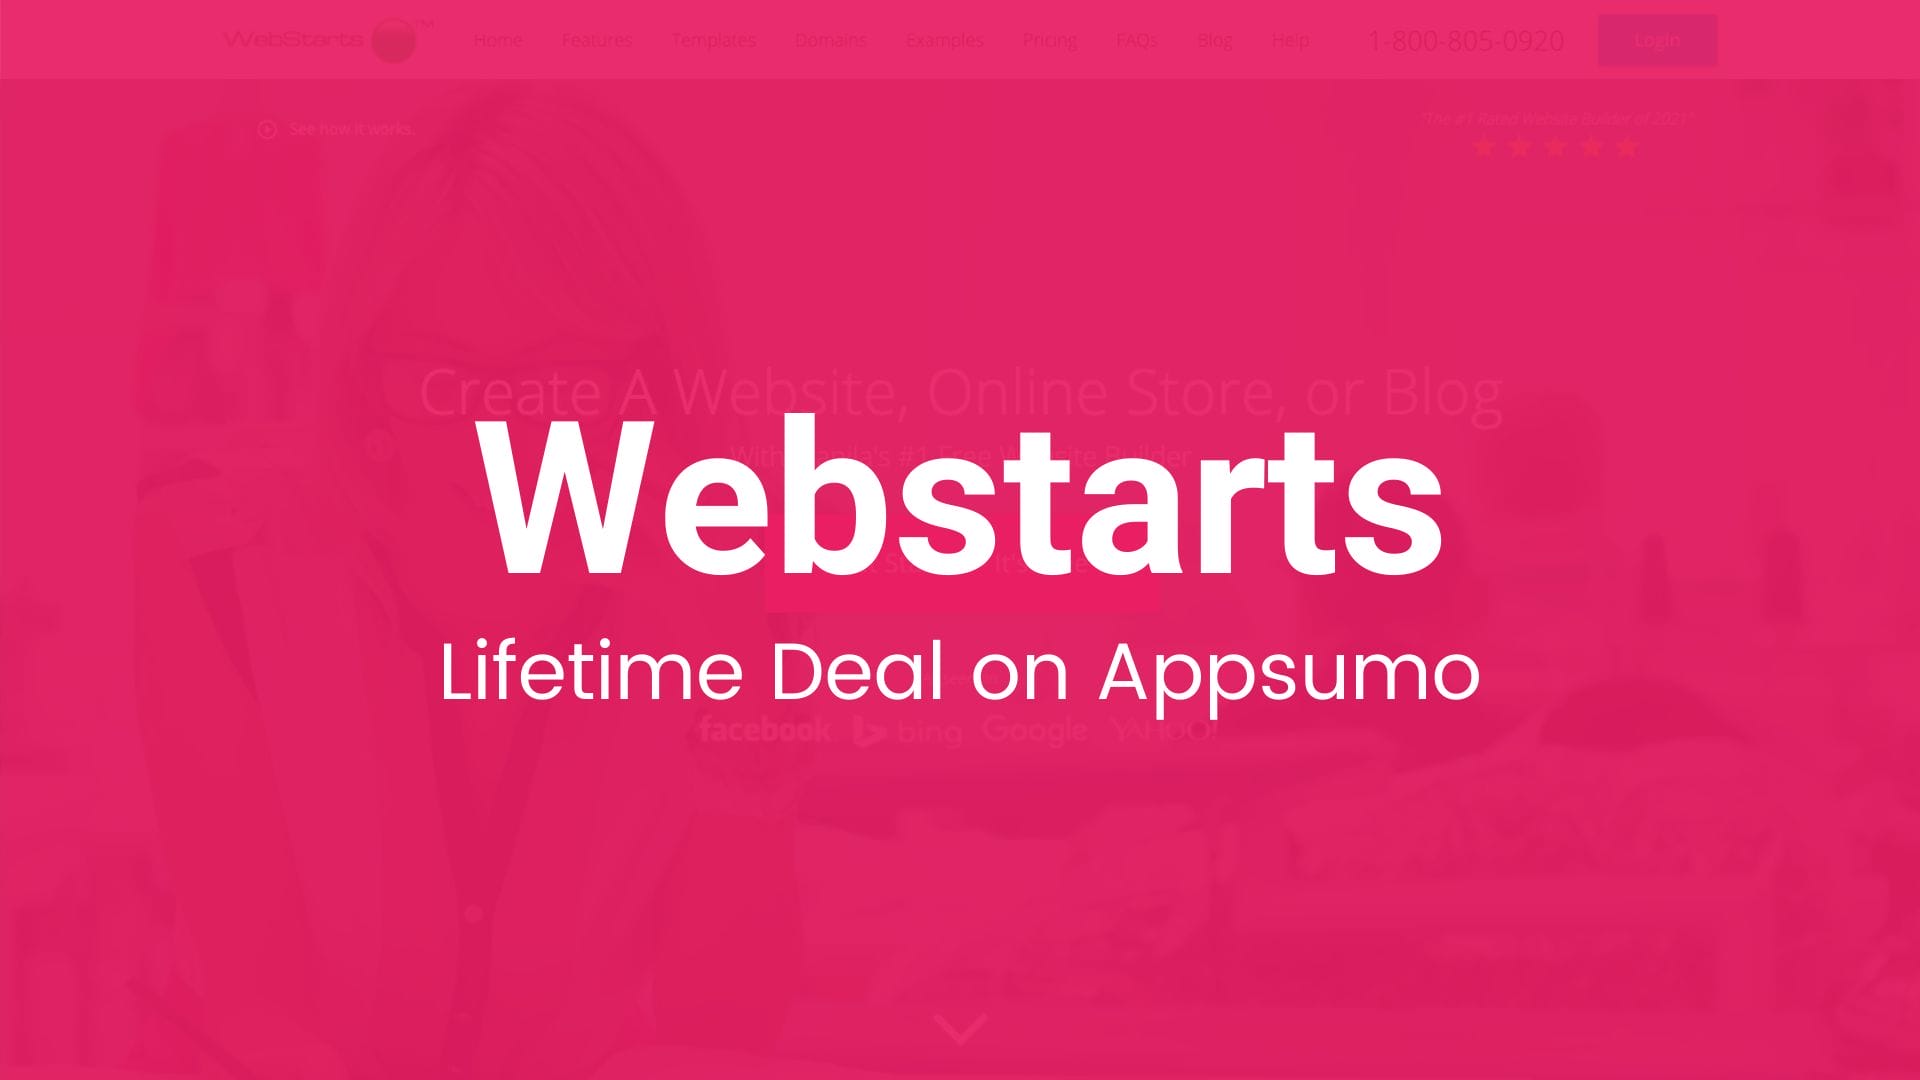 WebStarts: Website, Online Store, or Blog